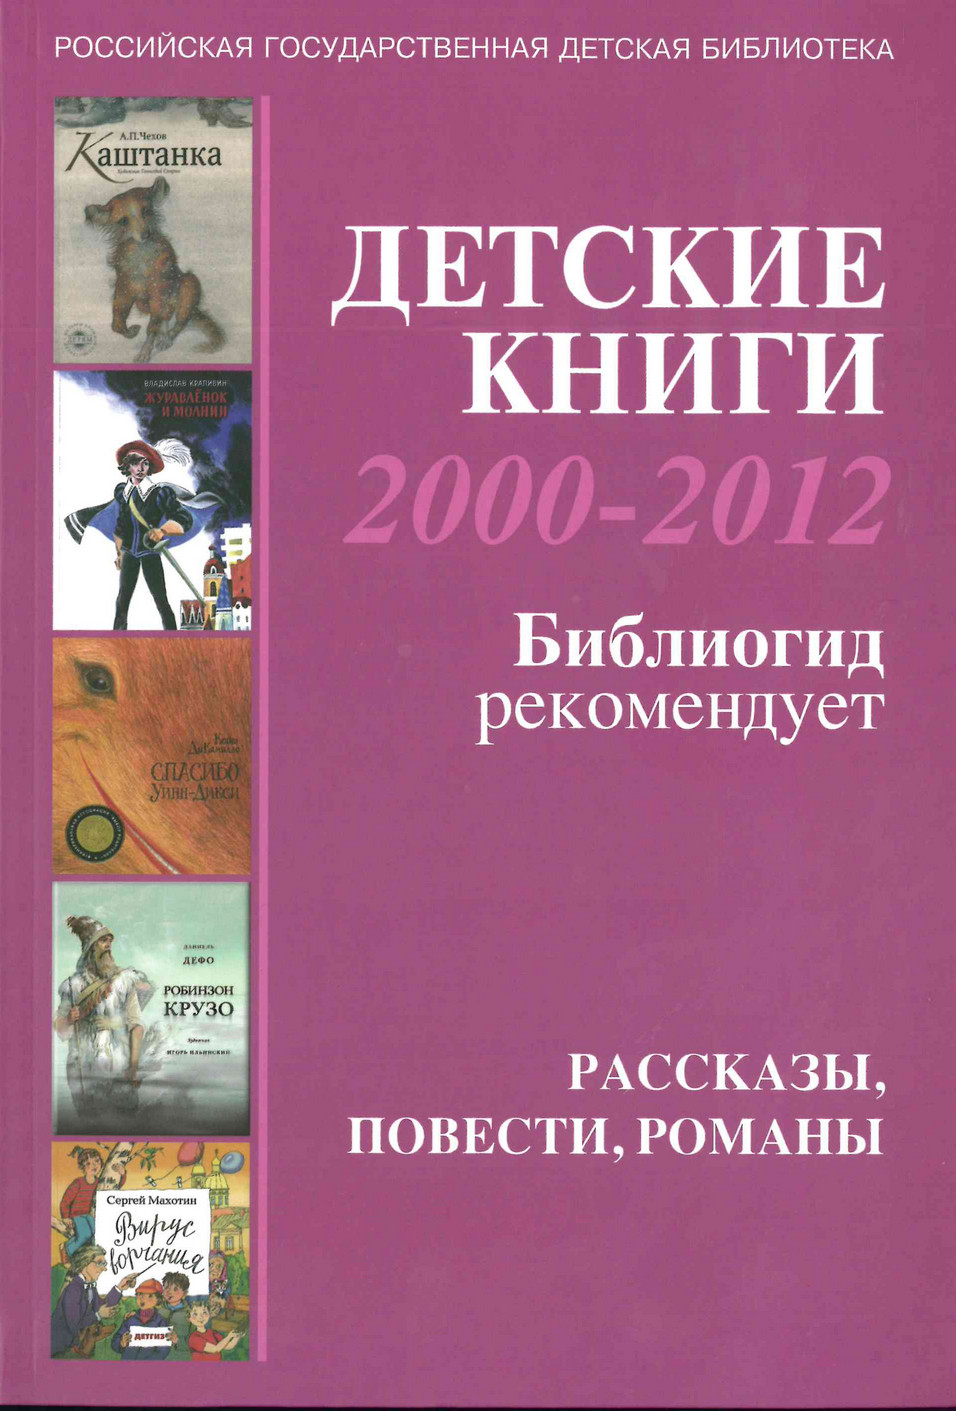  Детские книги 2000-2012: Библиогид рекомендует: [2] Рассказы, повести, романы